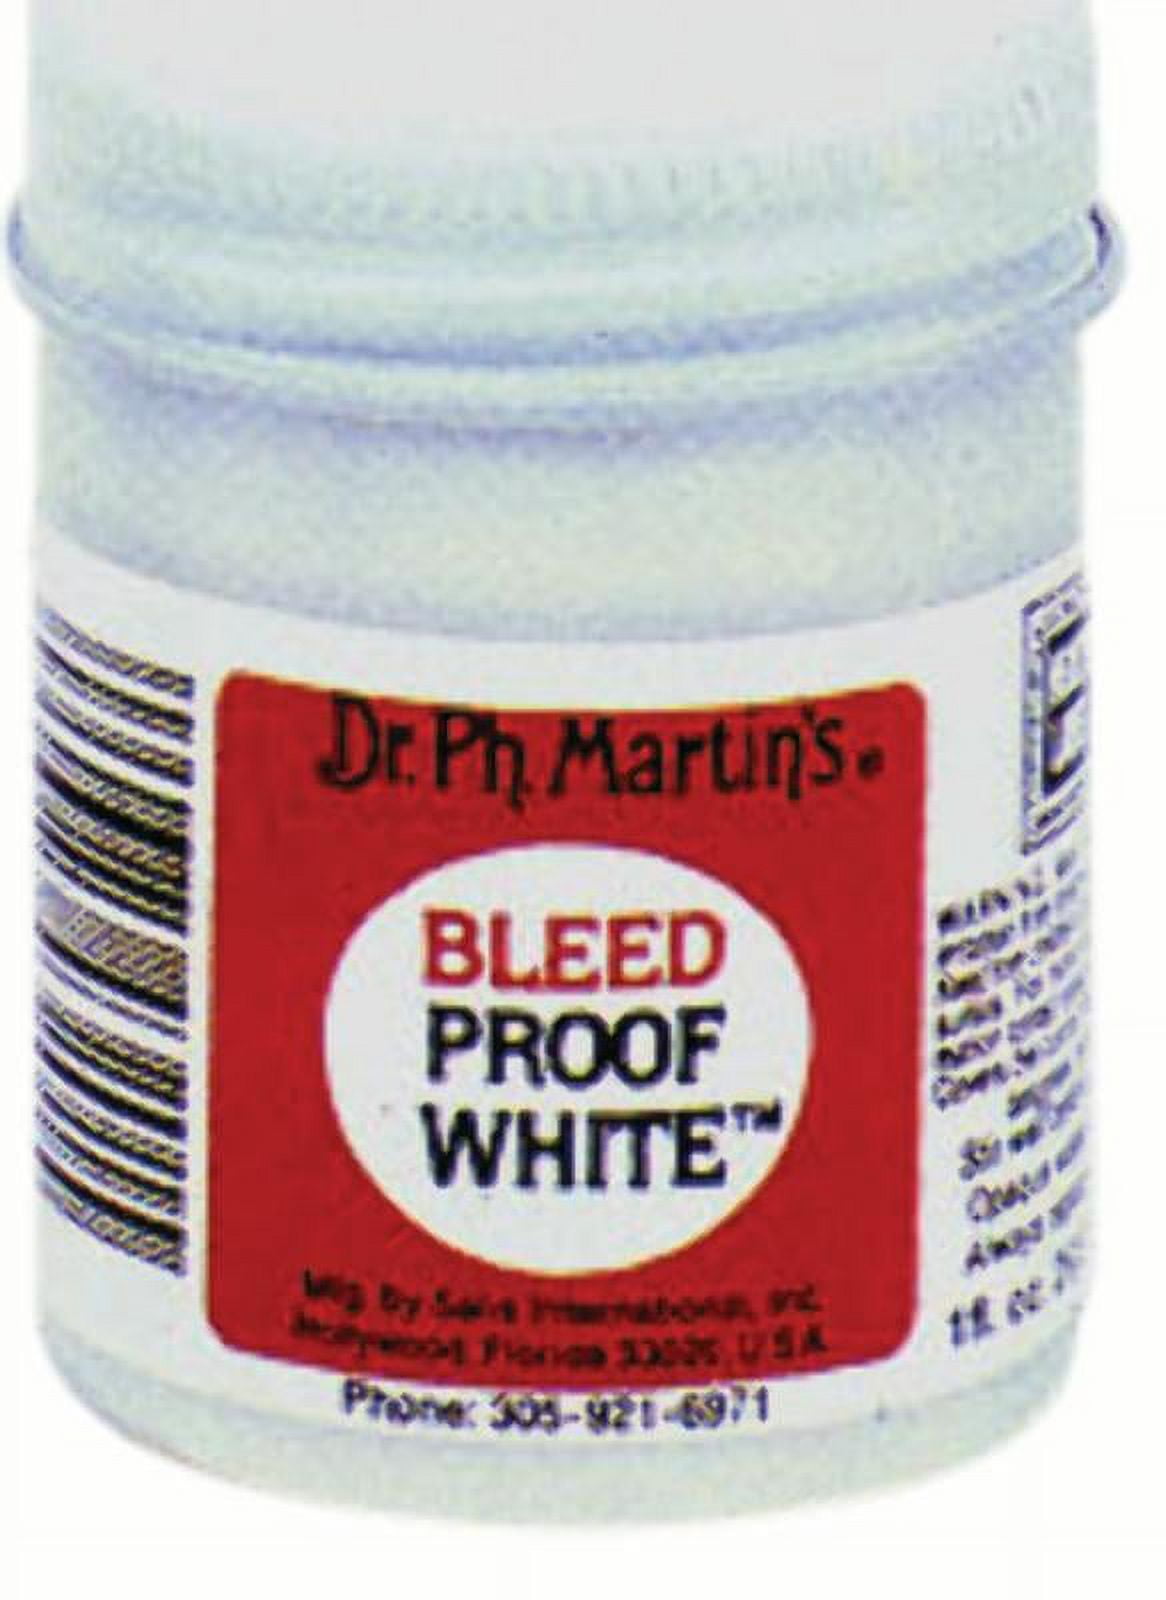 Buy Dr. Ph Martin's Bleed Proof White (30ml)